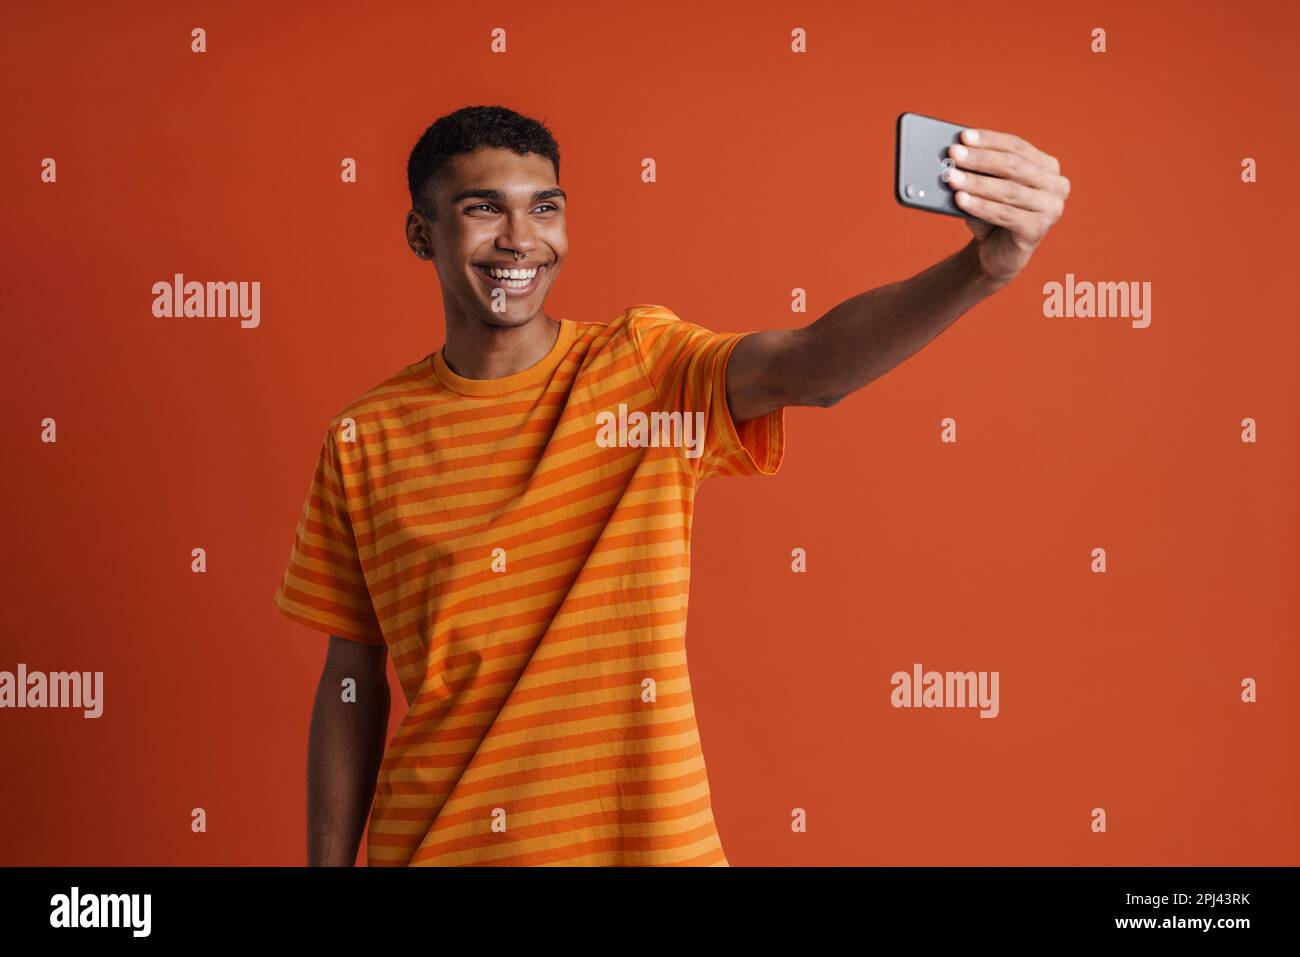 Junger, gutaussehender, glücklicher afrikaner mit Piercing, der Selfie am Telefon macht, während er über einem isolierten orangefarbenen Hintergrund steht Stockfoto